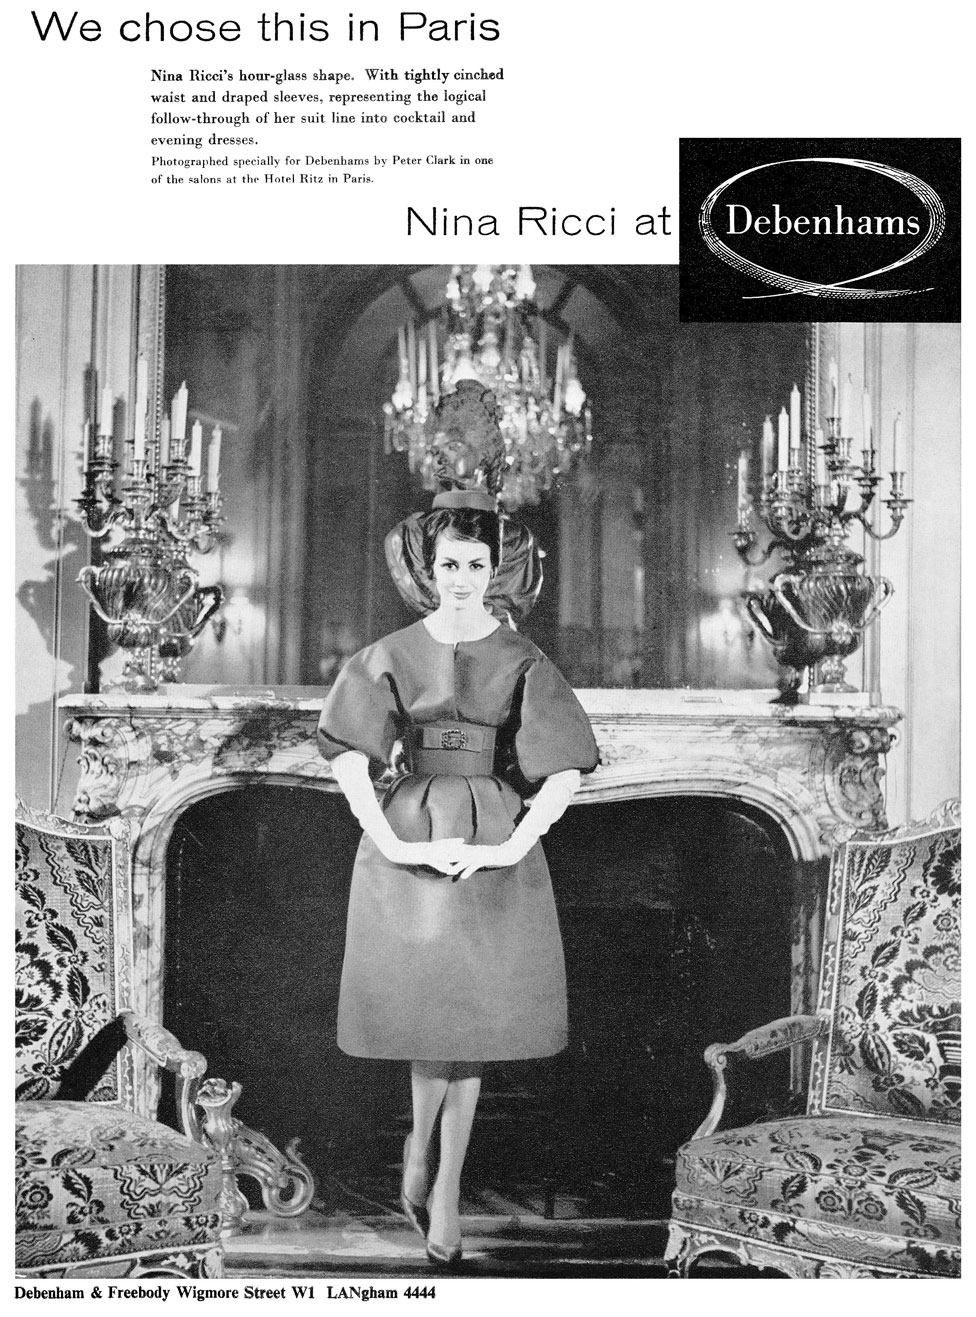 Реклама модного бренда, изображающая женщину в платье, стоящую перед элегантным камином